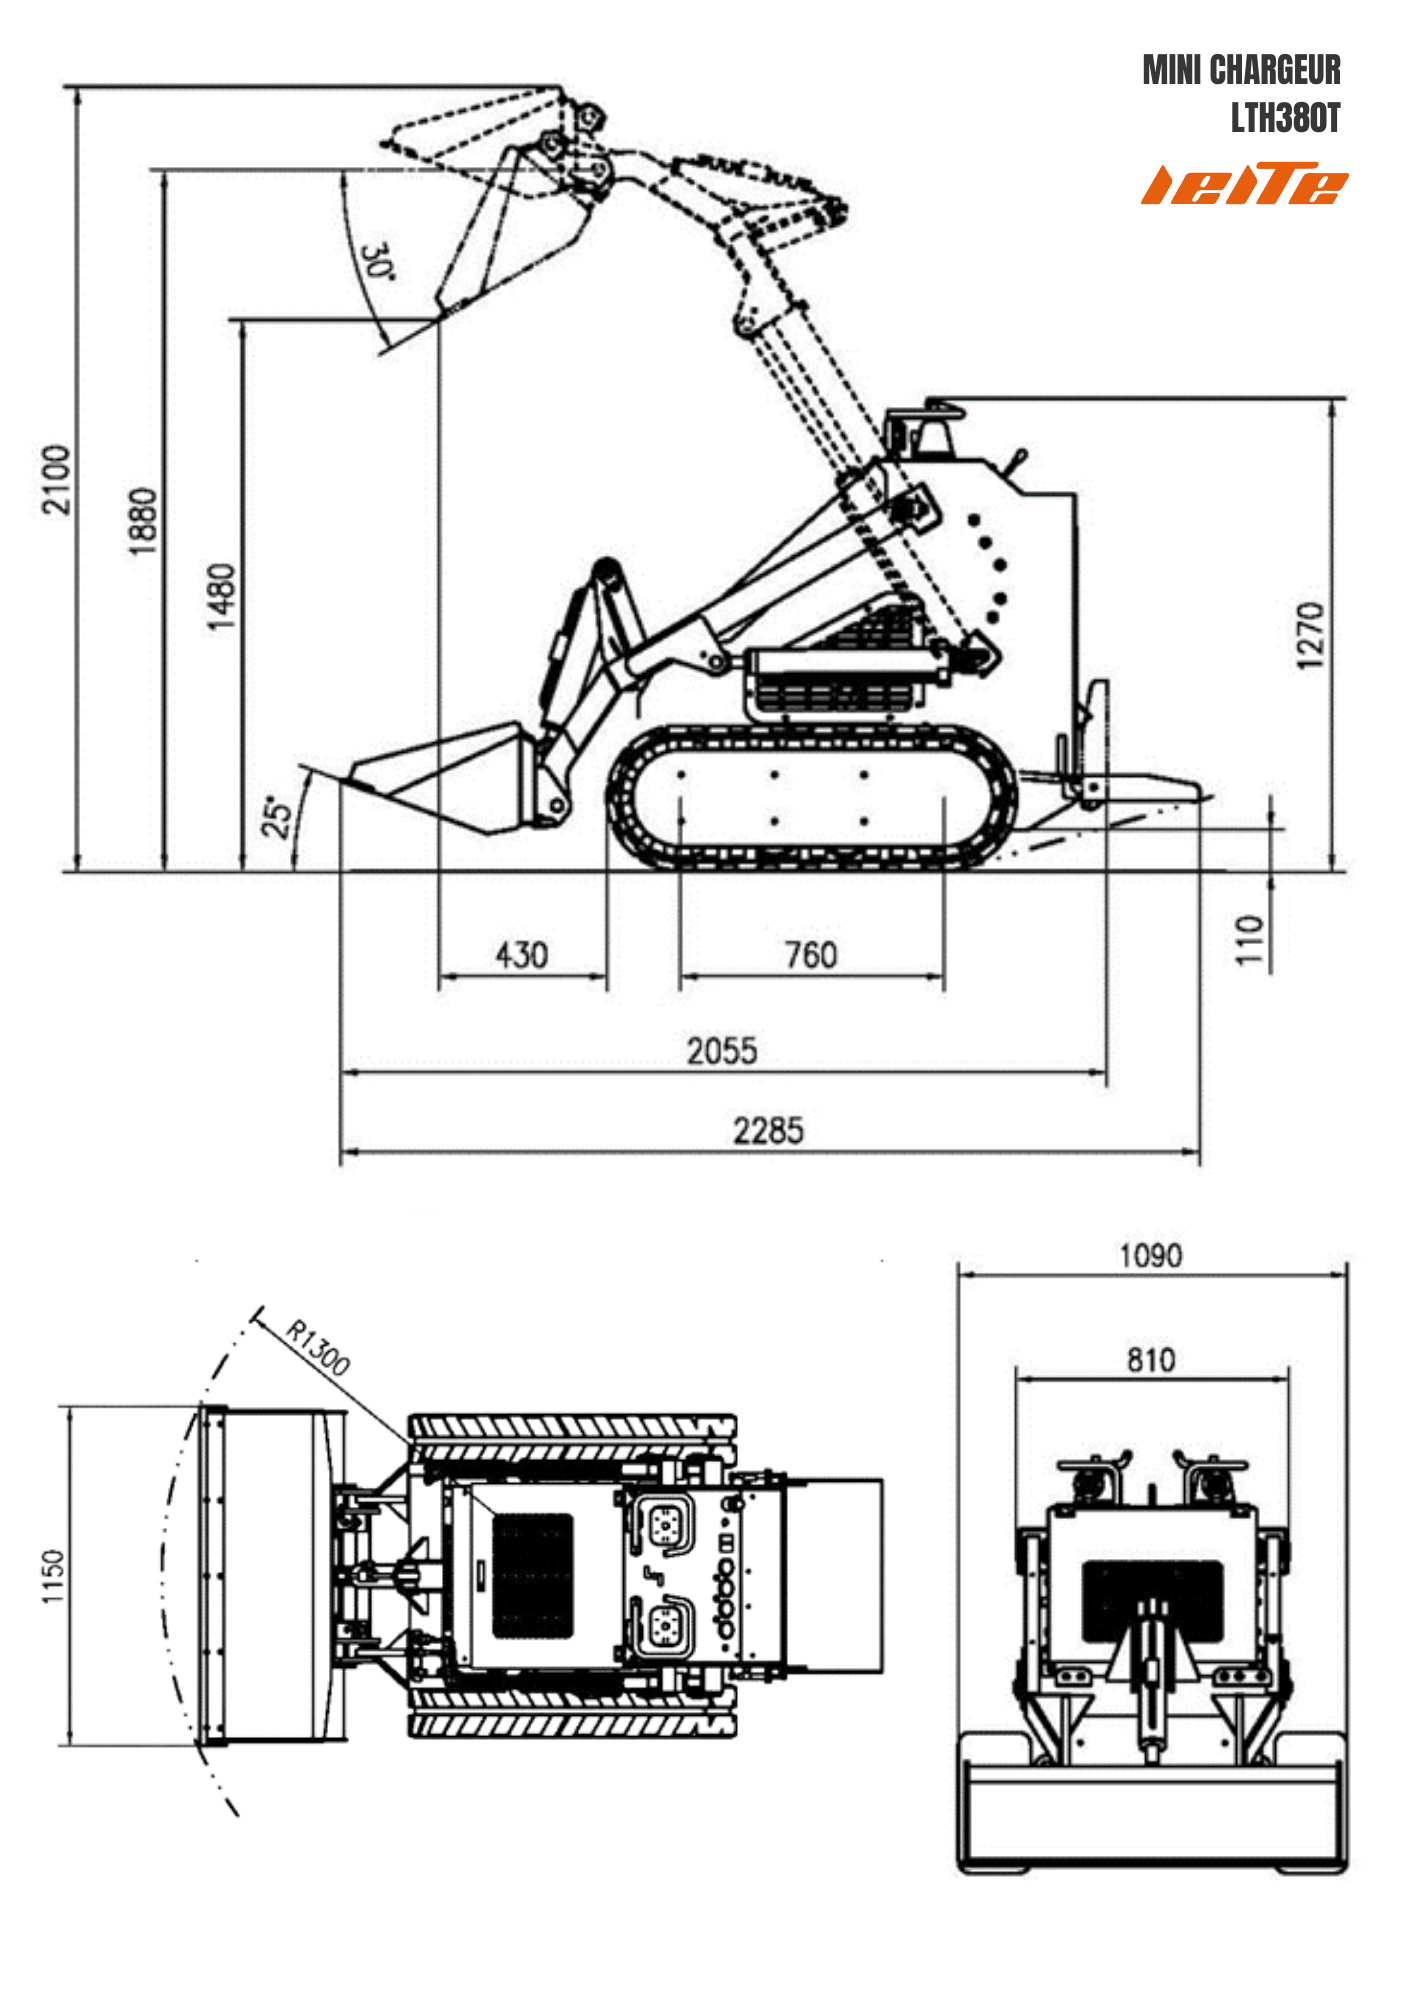 Schema tecnico del mini caricatore LTH380T